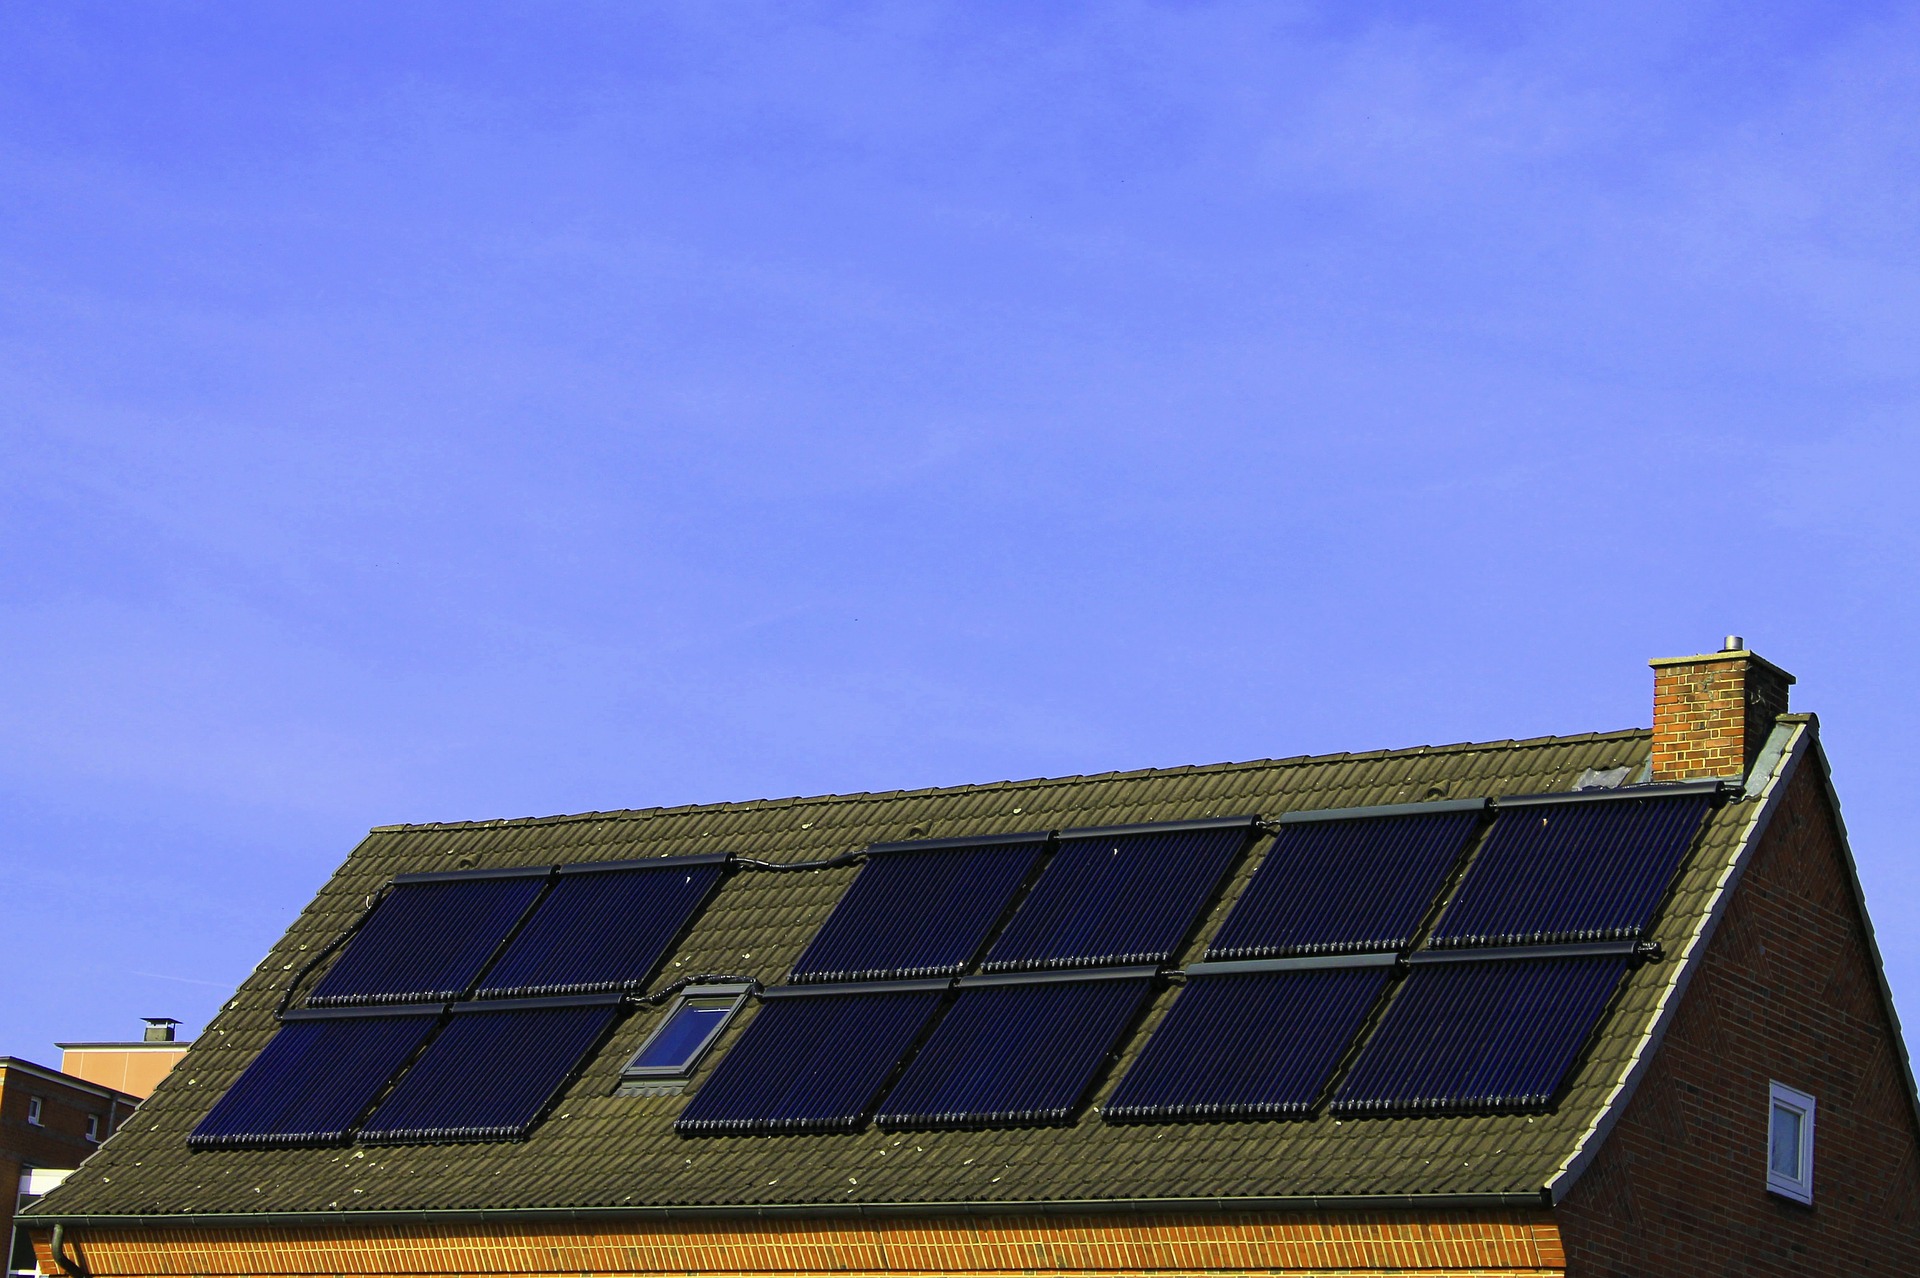 Abb. 1: Solaranlage auf einem Hausdach